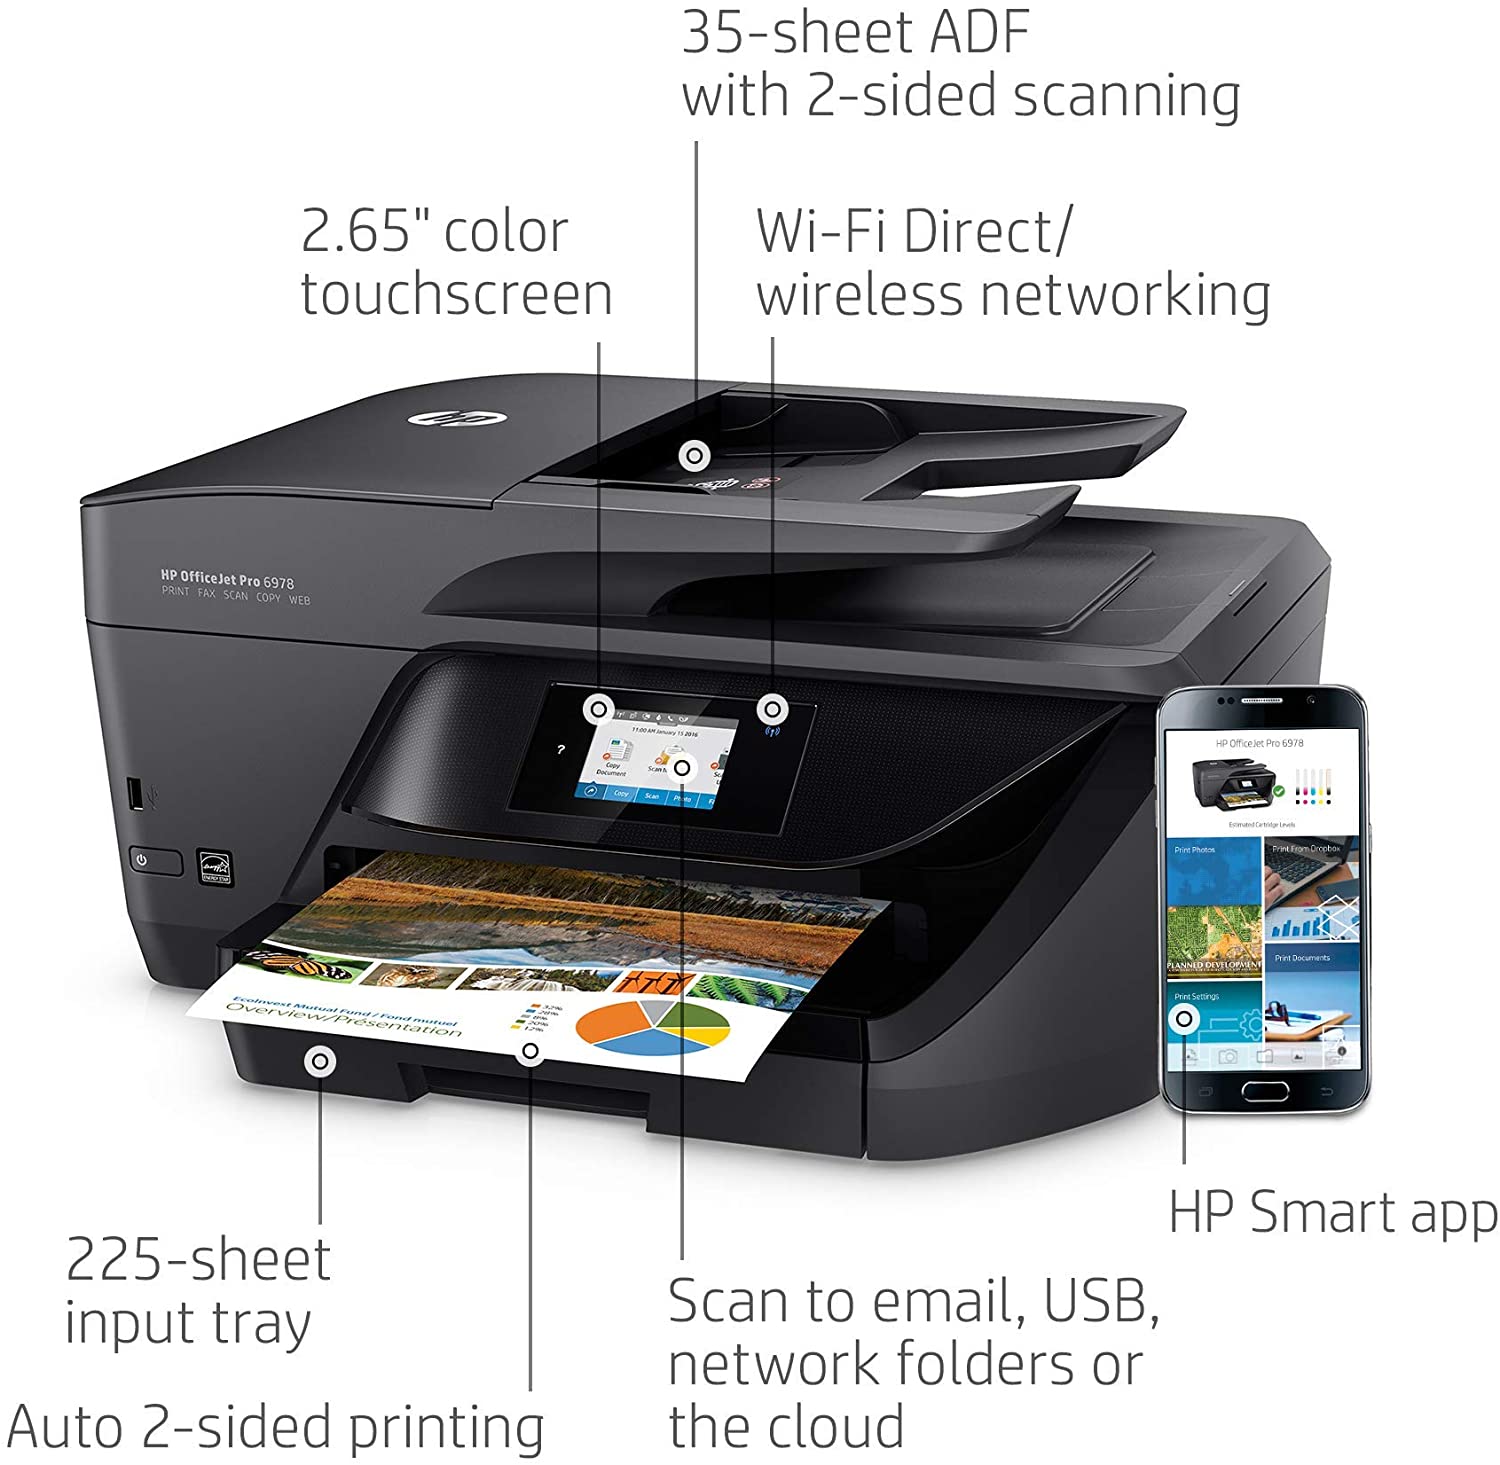 HP Officejet Pro 6978 Wireless Inkjet Multifunction Printer - image 1 of 5